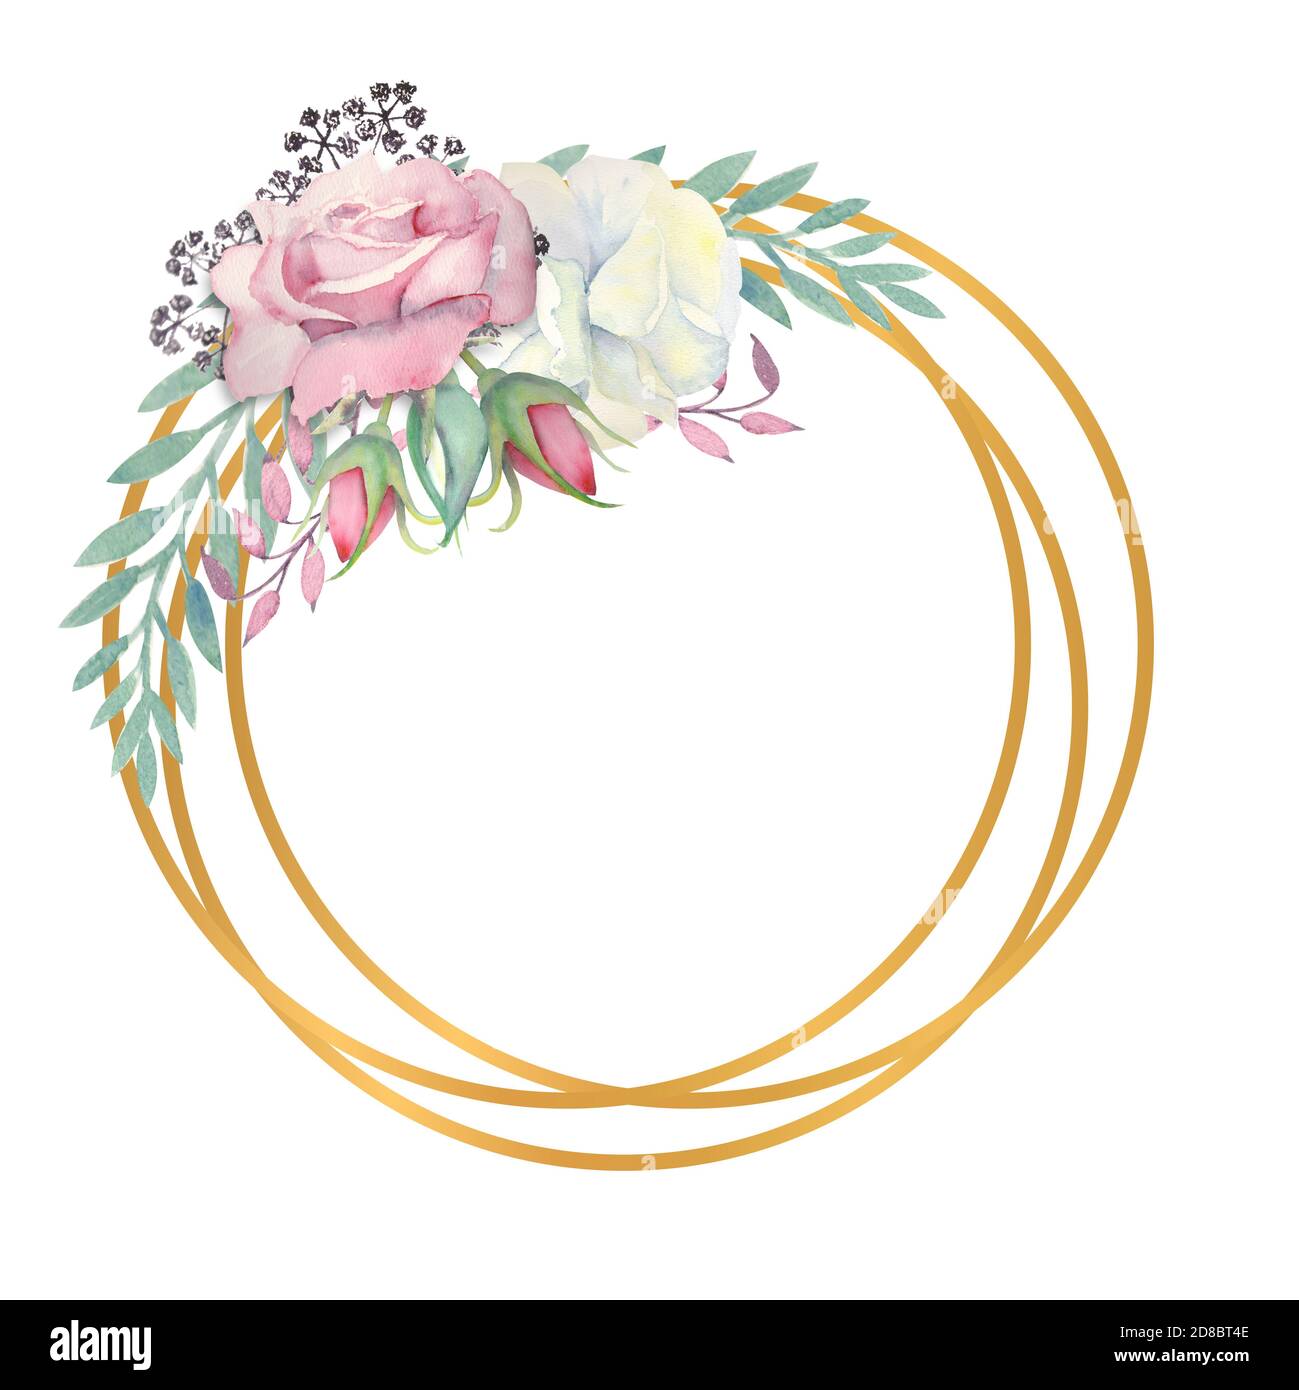 Fleurs roses blanches et roses, feuilles vertes, baies dans un cadre rond  doré. Illustration aquarelle Photo Stock - Alamy